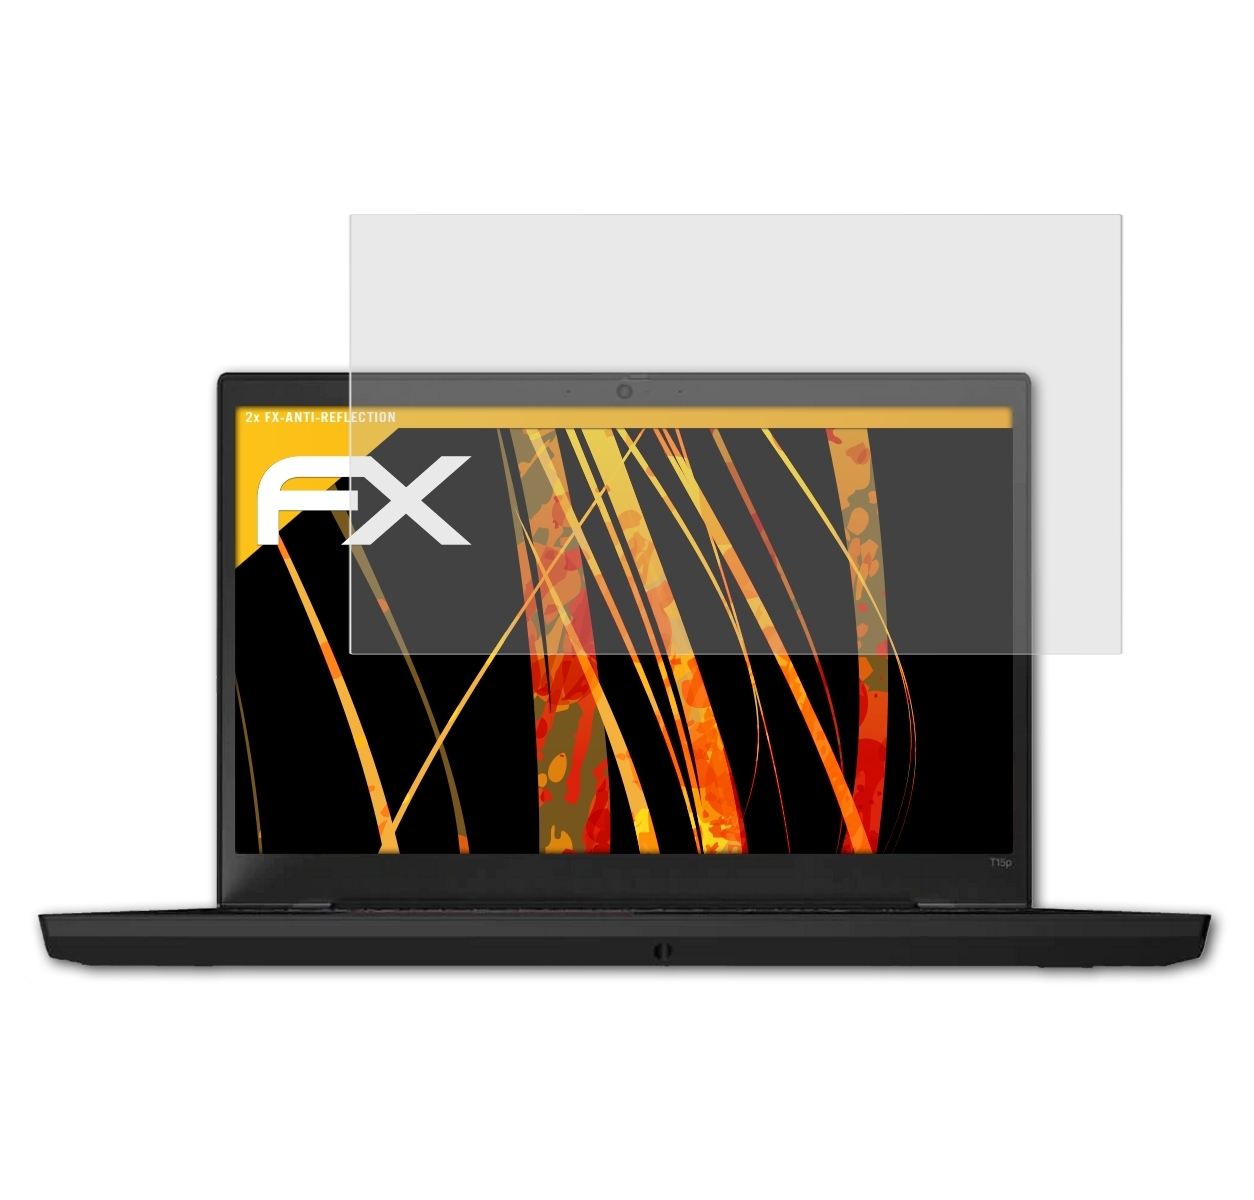 Lenovo T15p) ThinkPad 2x Displayschutz(für ATFOLIX FX-Antireflex